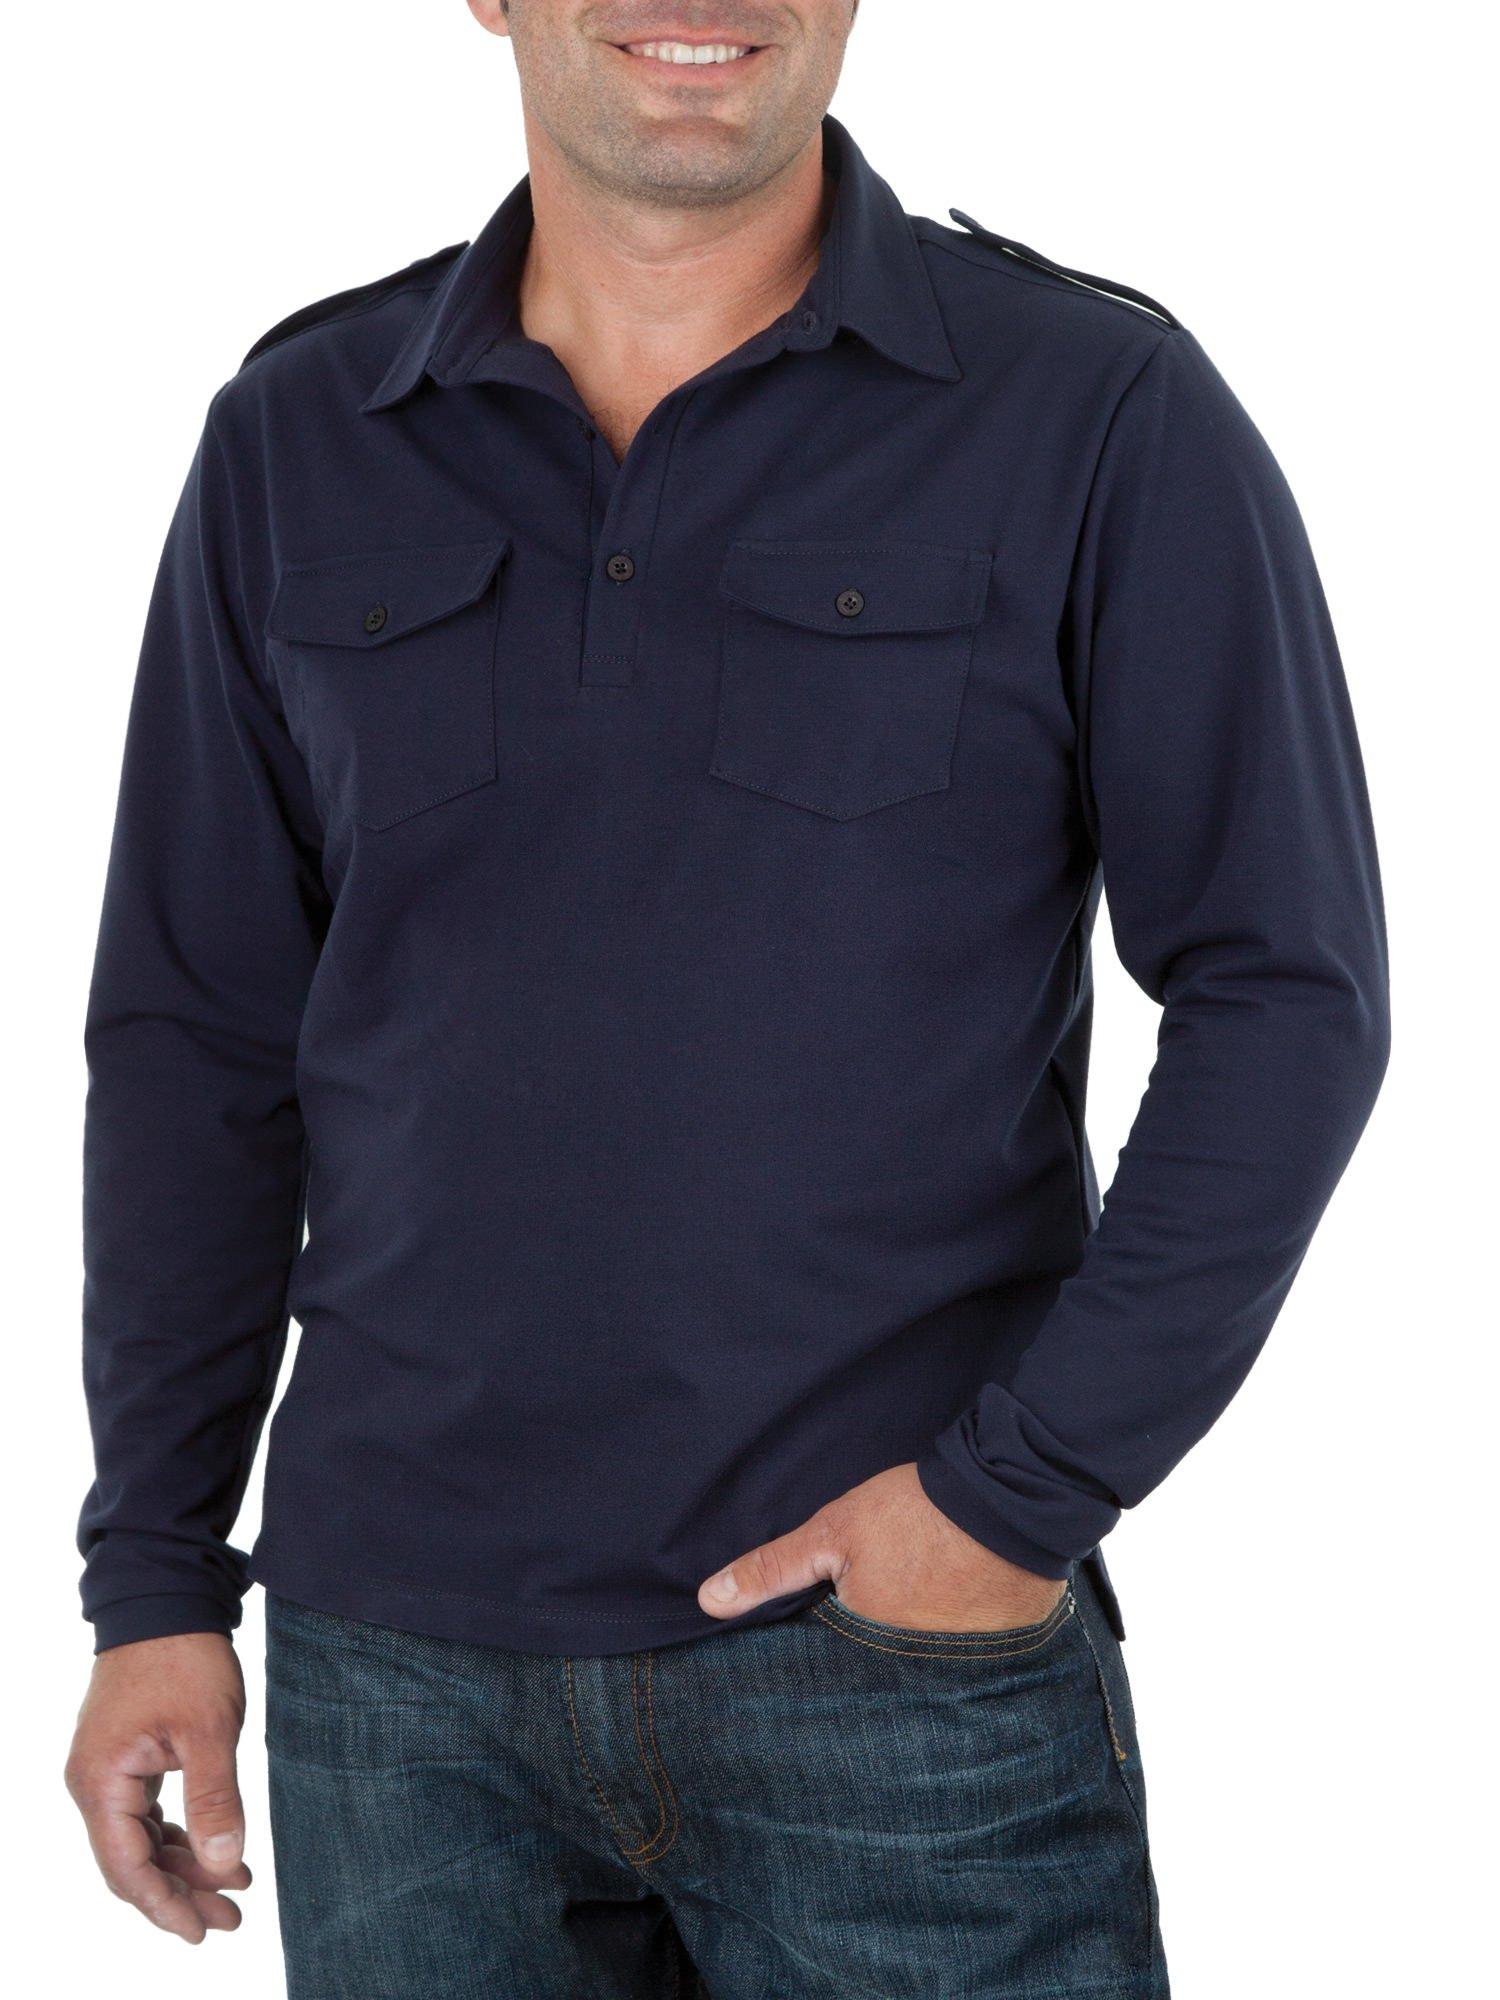 Jalie 3137 - Polo Shirt Pattern for Men